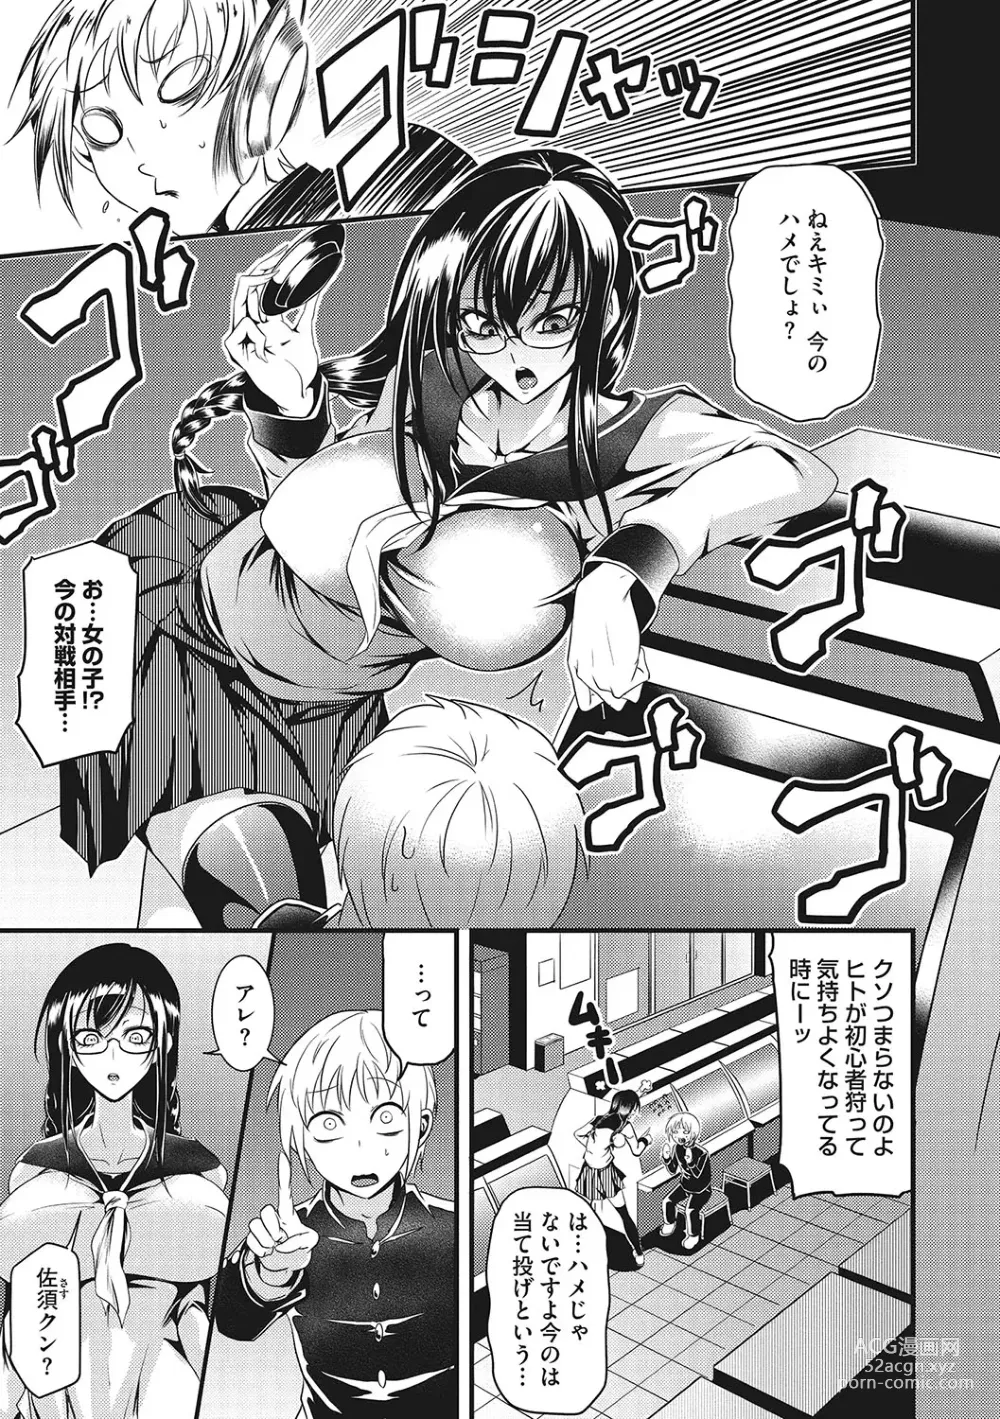 Page 6 of manga Sanpai Shoujo